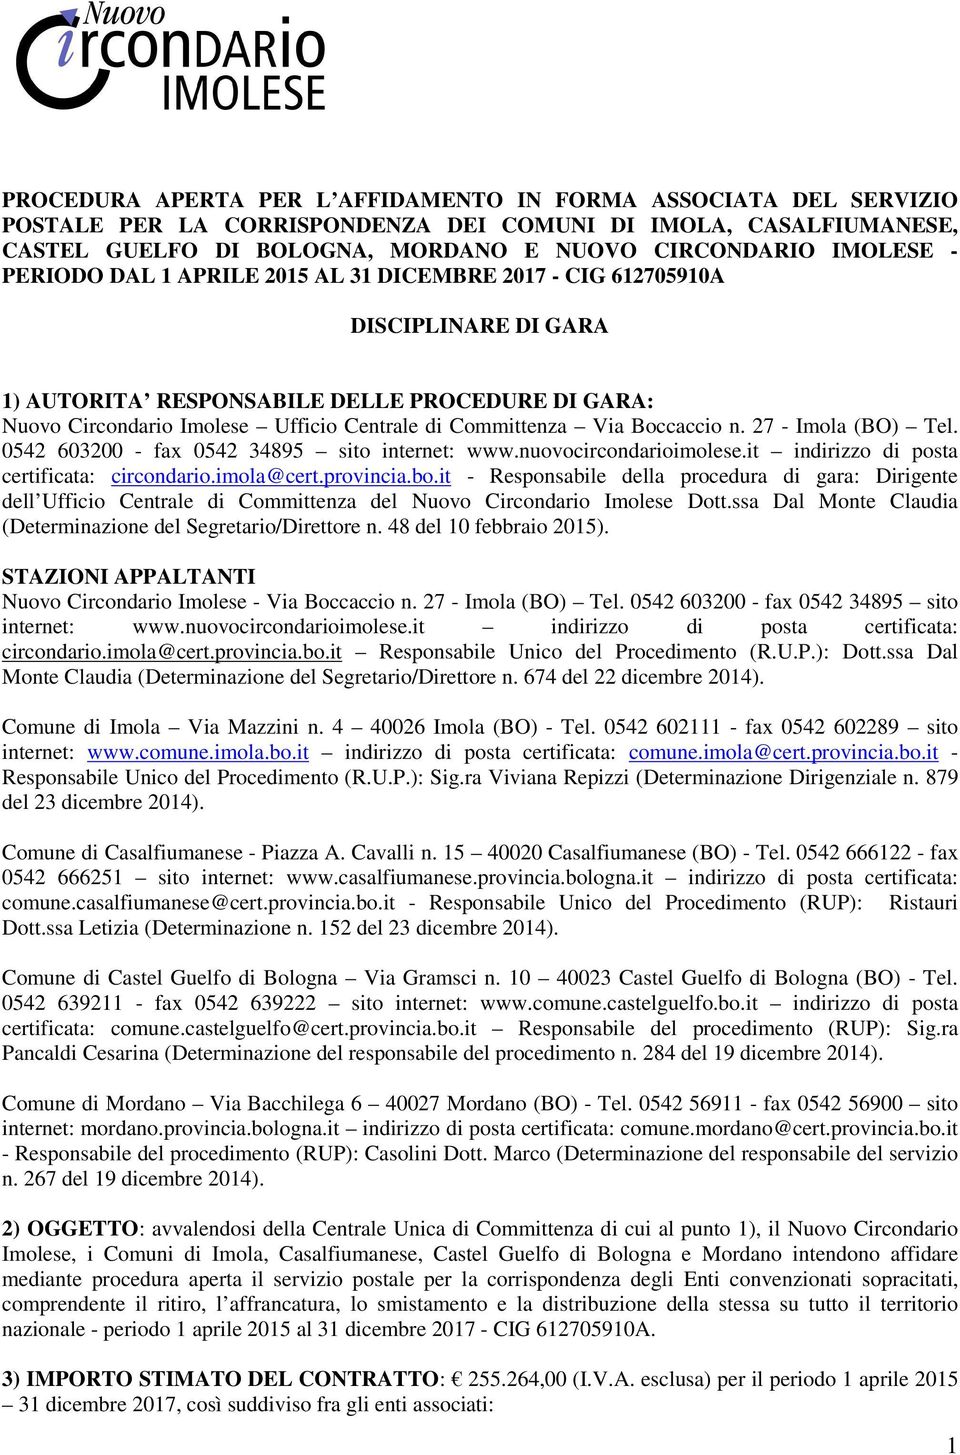 Boccaccio n. 27 - Imola (BO) Tel. 0542 603200 - fax 0542 34895 sito internet: www.nuovocircondarioimolese.it indirizzo di posta certificata: circondario.imola@cert.provincia.bo.